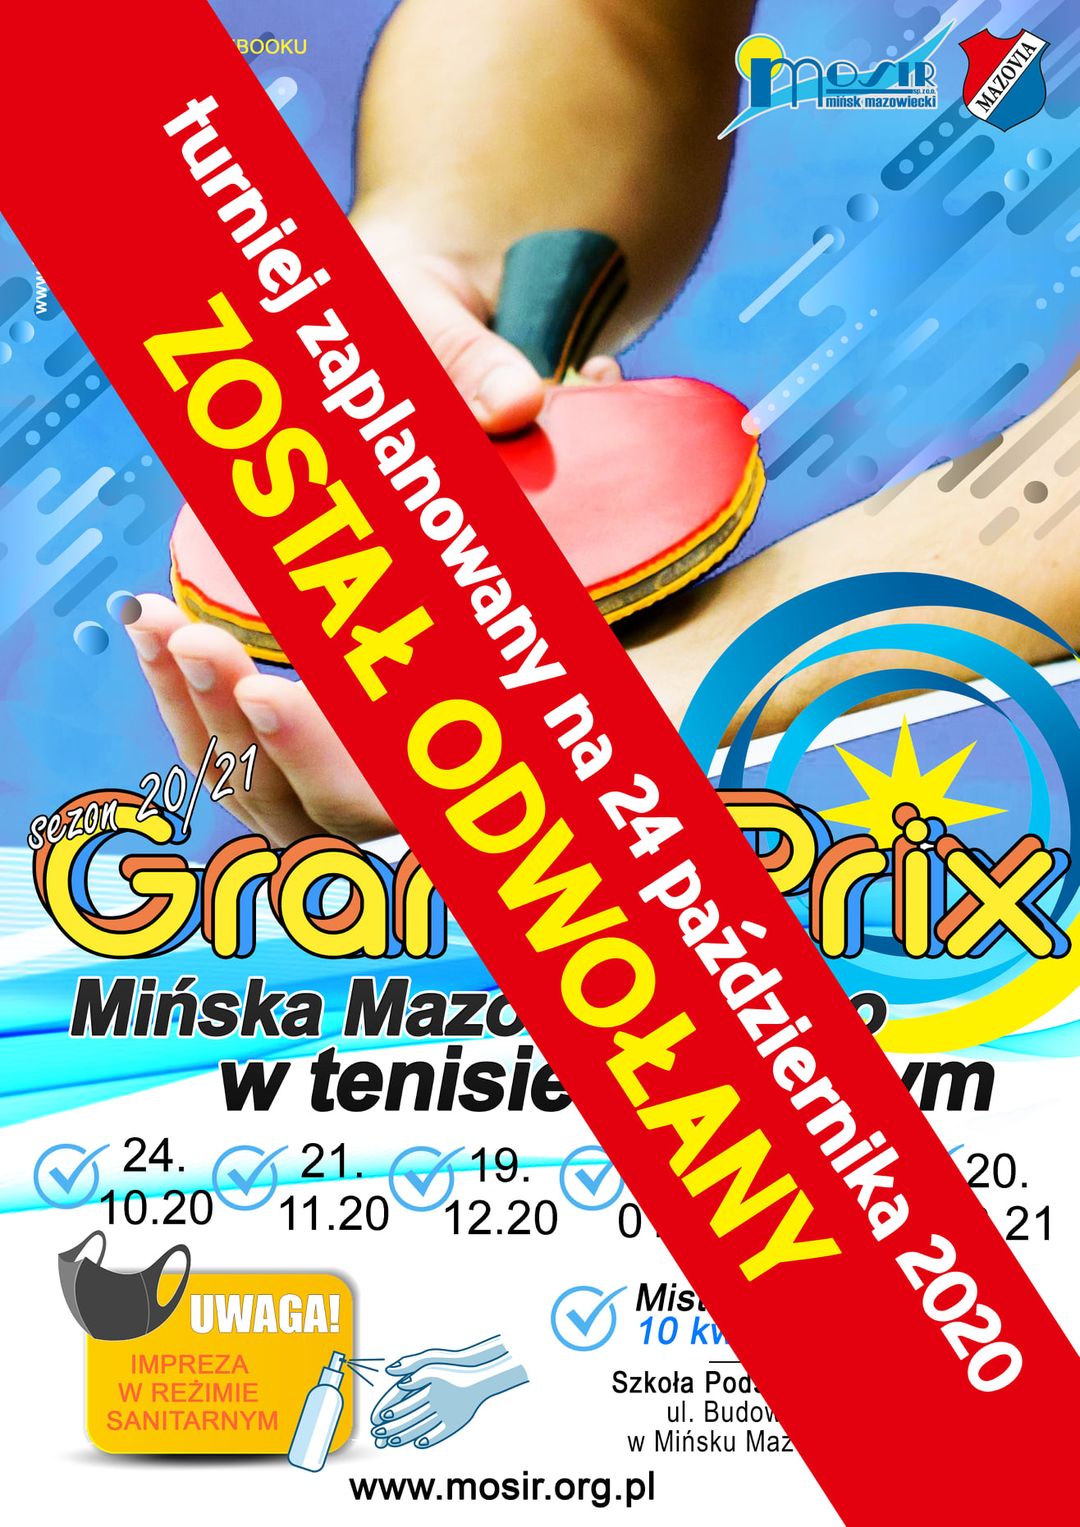 Plakat turnieju Grand Prix Mińska Mazowieckiego w tenisie stołowym w sezonie 2020/2021 - termin 1